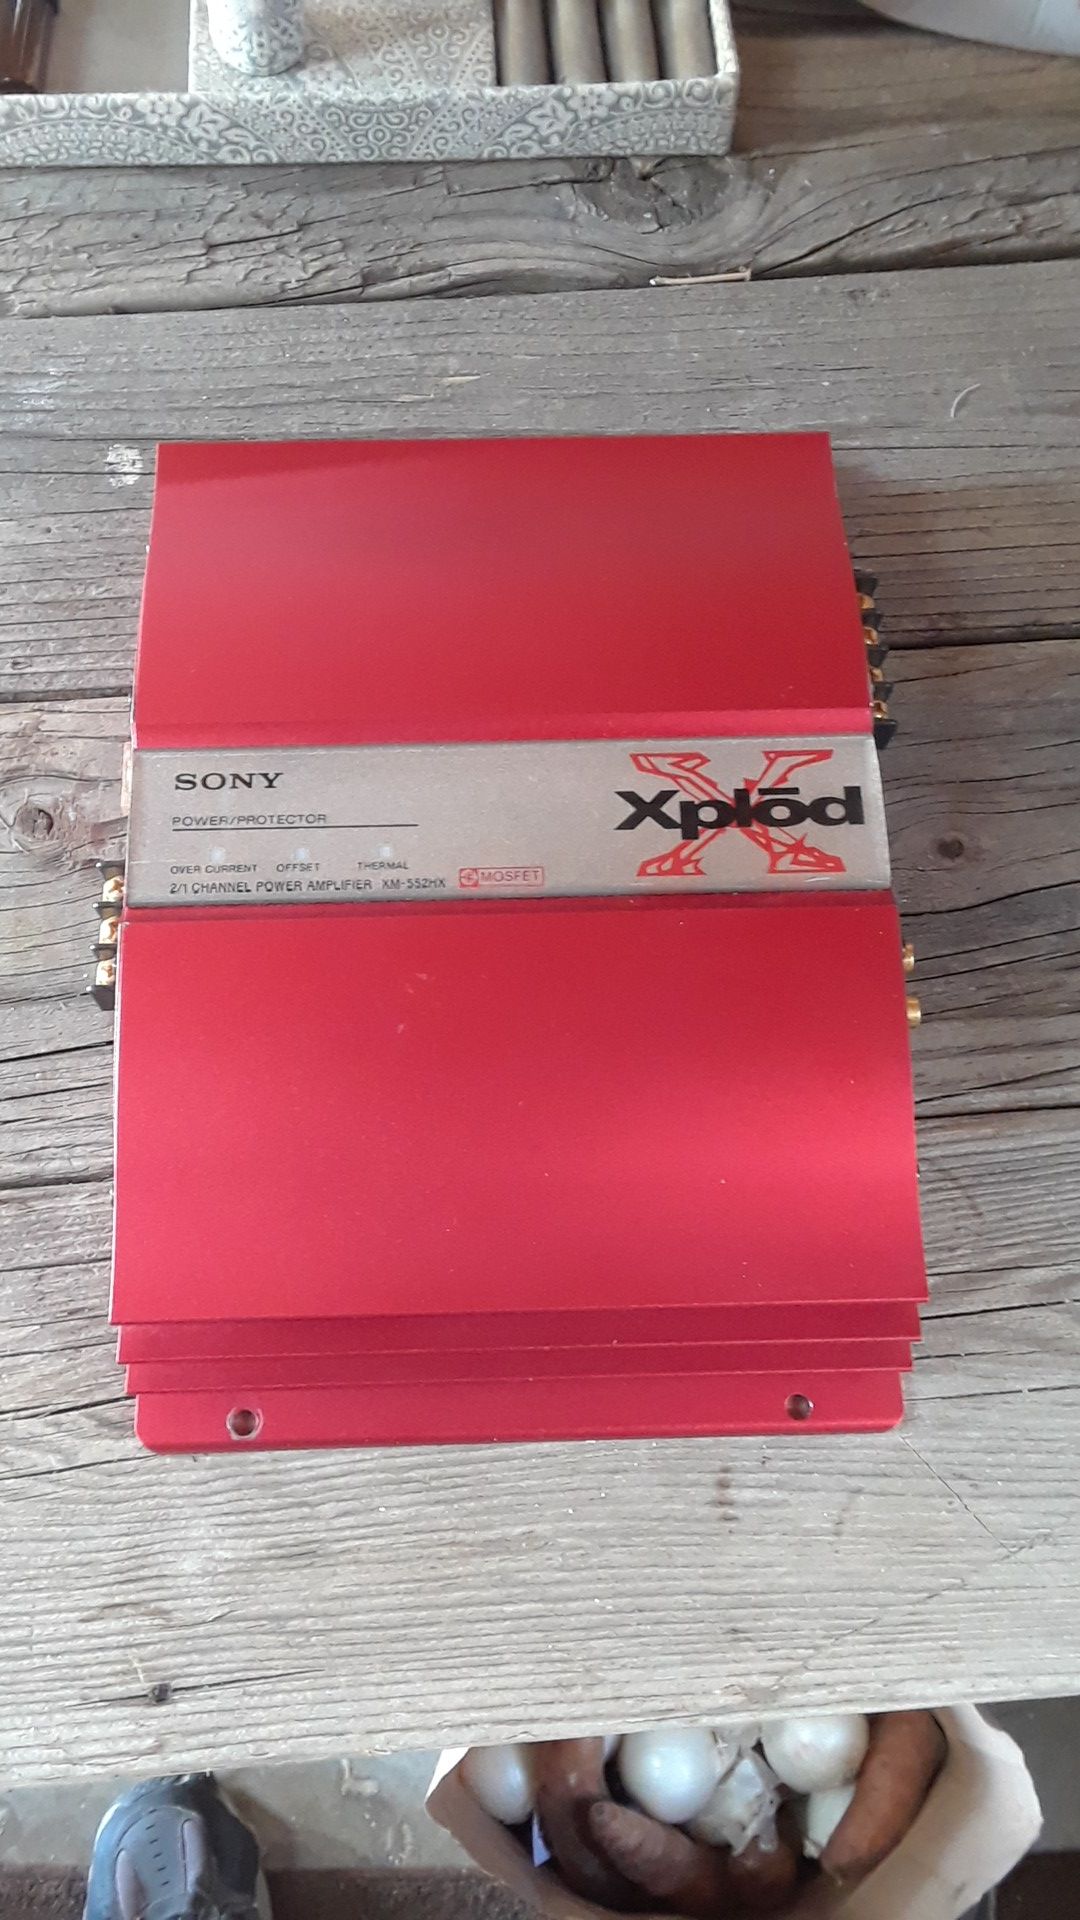 Sony Xplod power amplifier